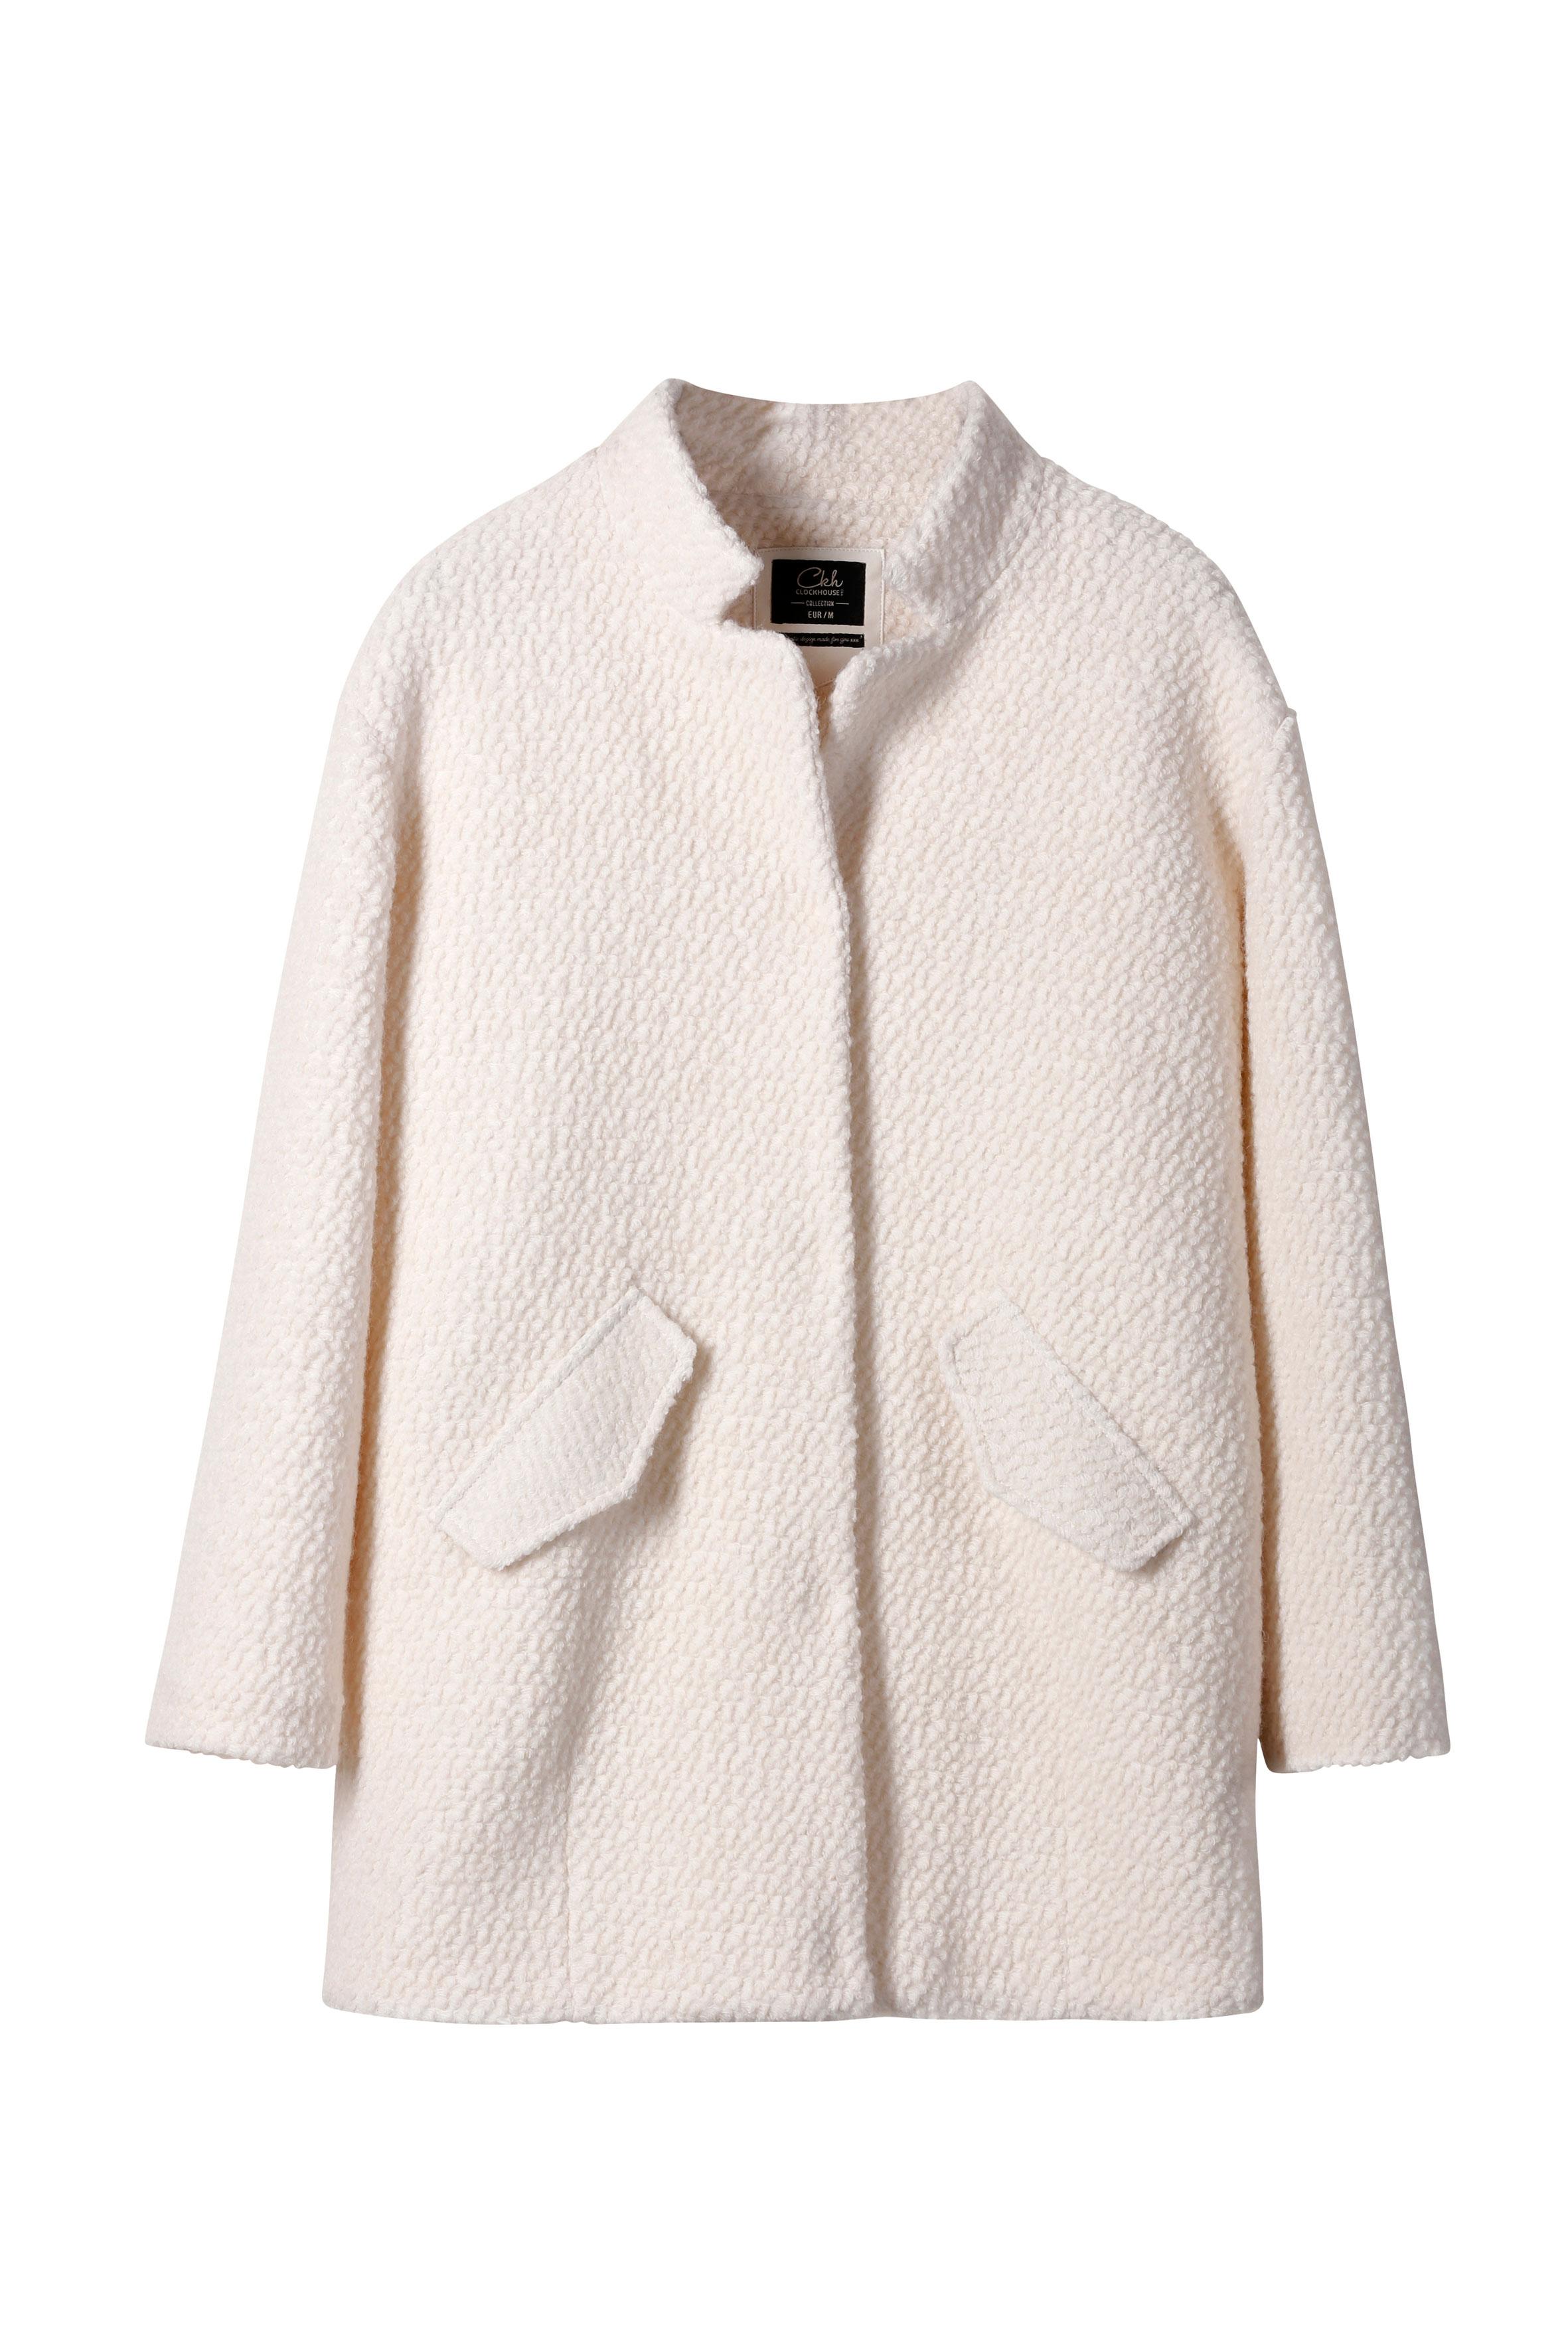 Manteau bouclé en laine - C&A - 49 €